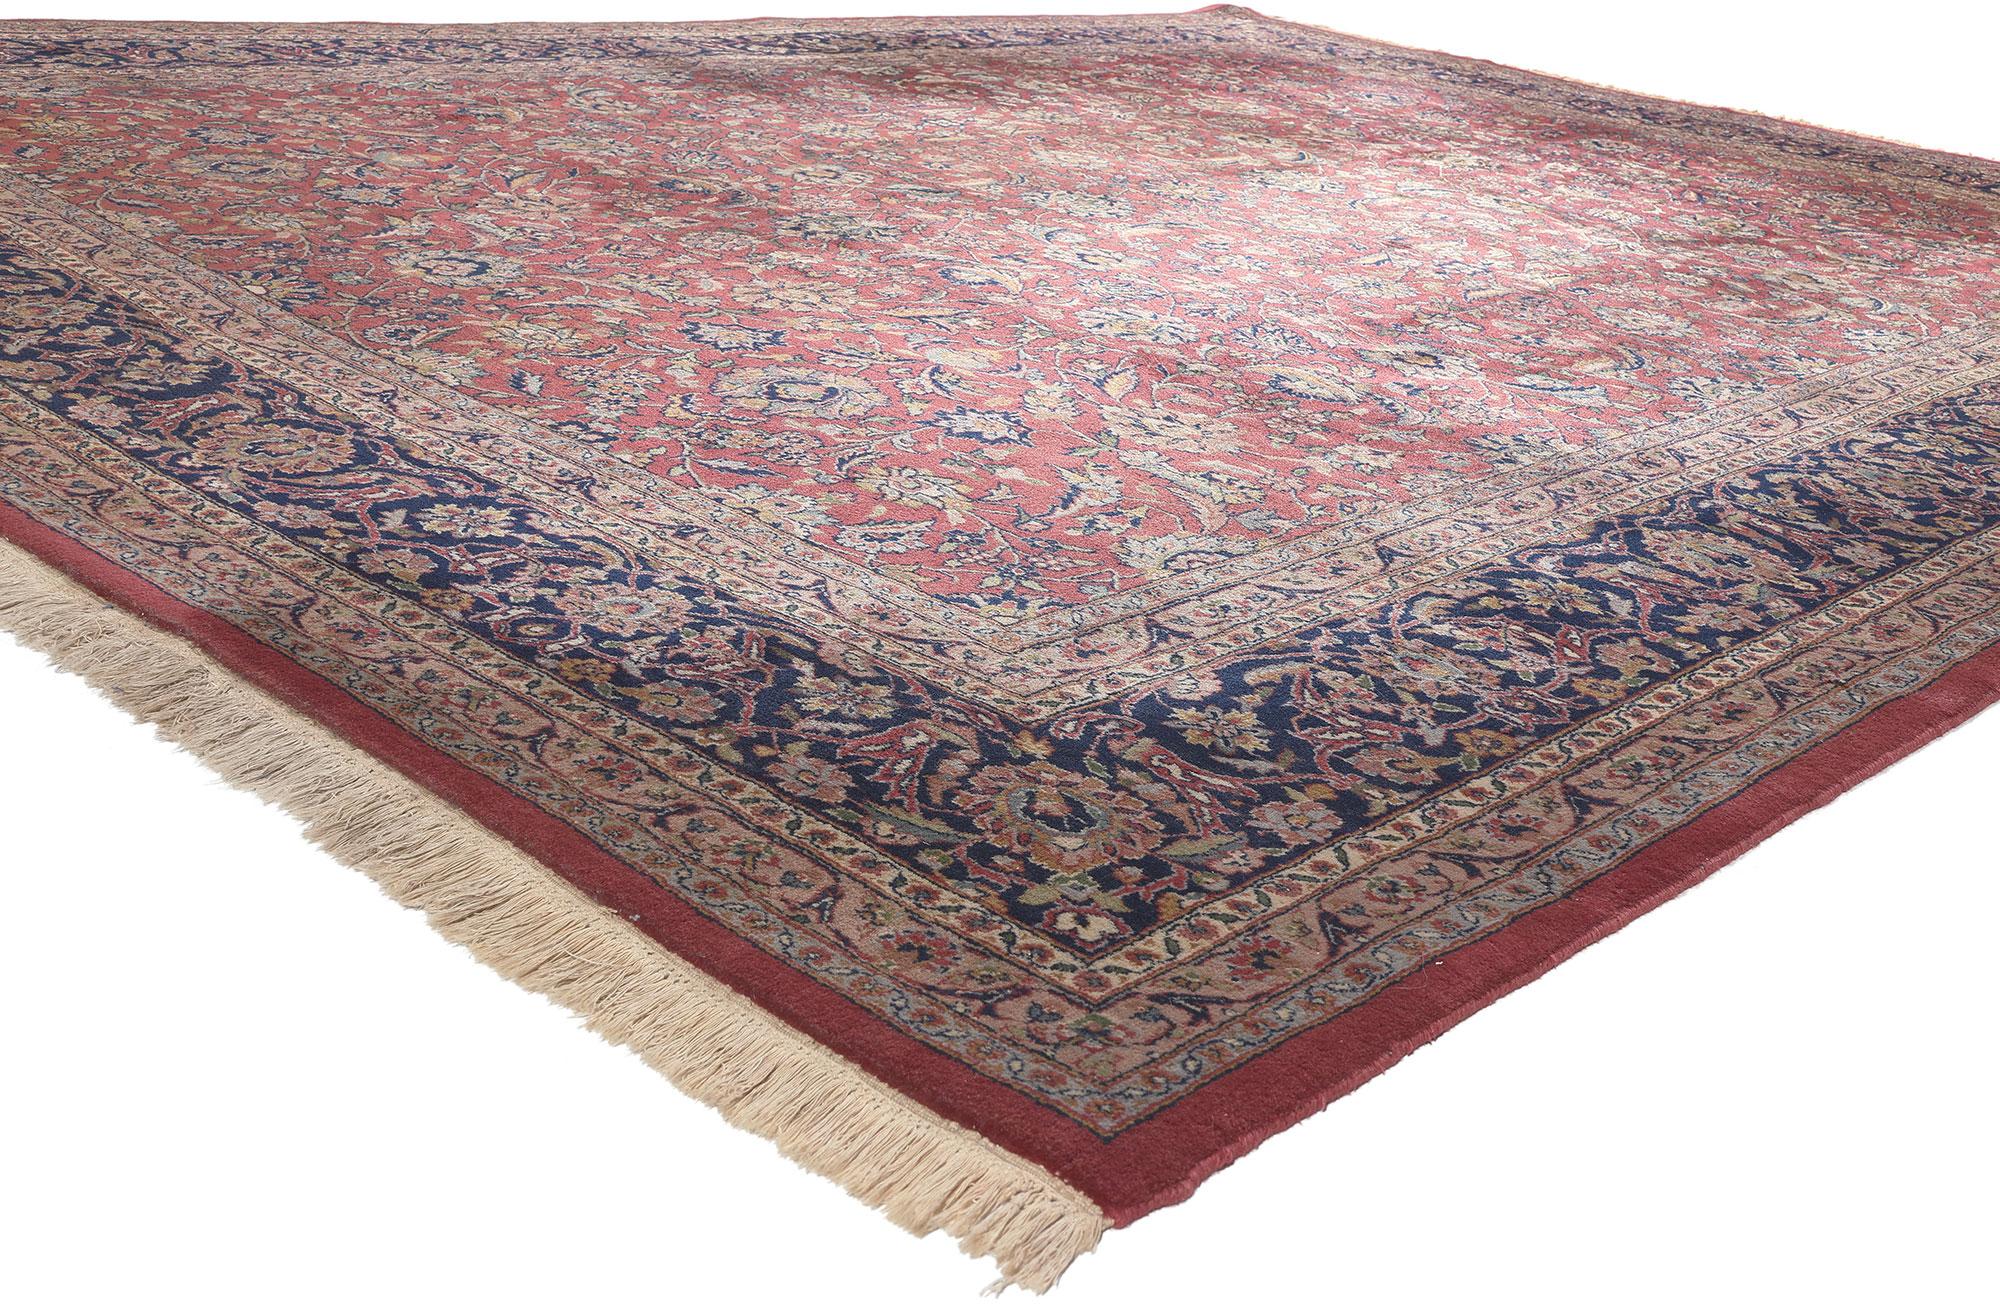 78543 Tapis indien vintage Tabriz, 09'10 x 13'01.
Empruntant une sensibilité traditionnelle à l'attrait intemporel, ce tapis Tabriz indien vintage en laine est une vision captivante de la beauté tissée. Les détails botaniques décoratifs et la